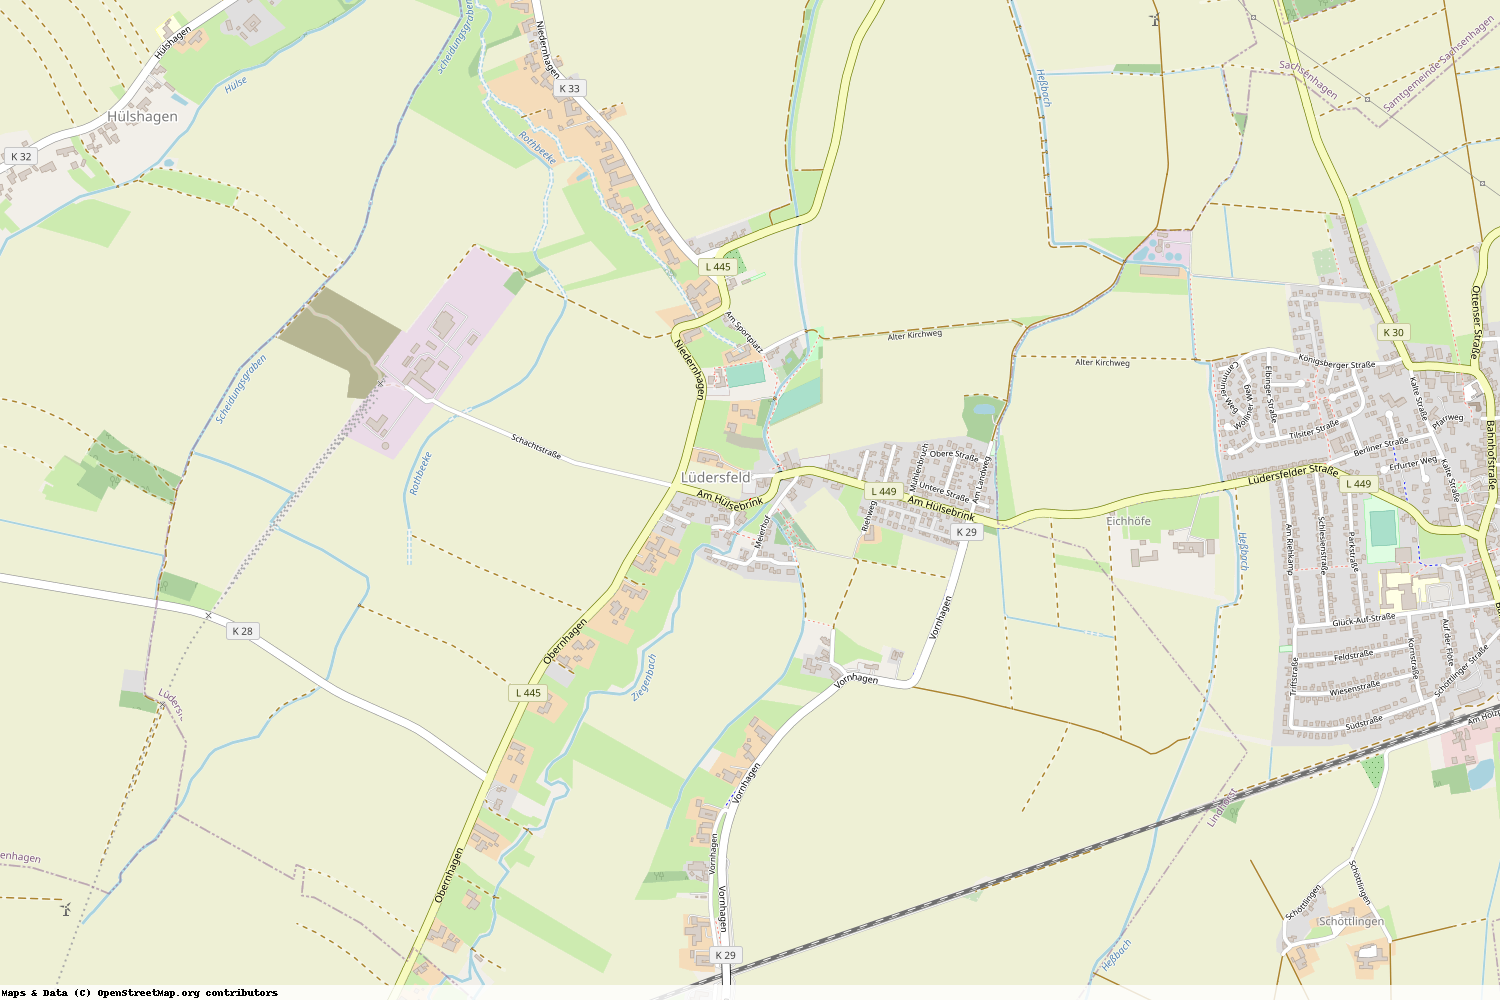 Ist gerade Stromausfall in Niedersachsen - Schaumburg - Lüdersfeld?